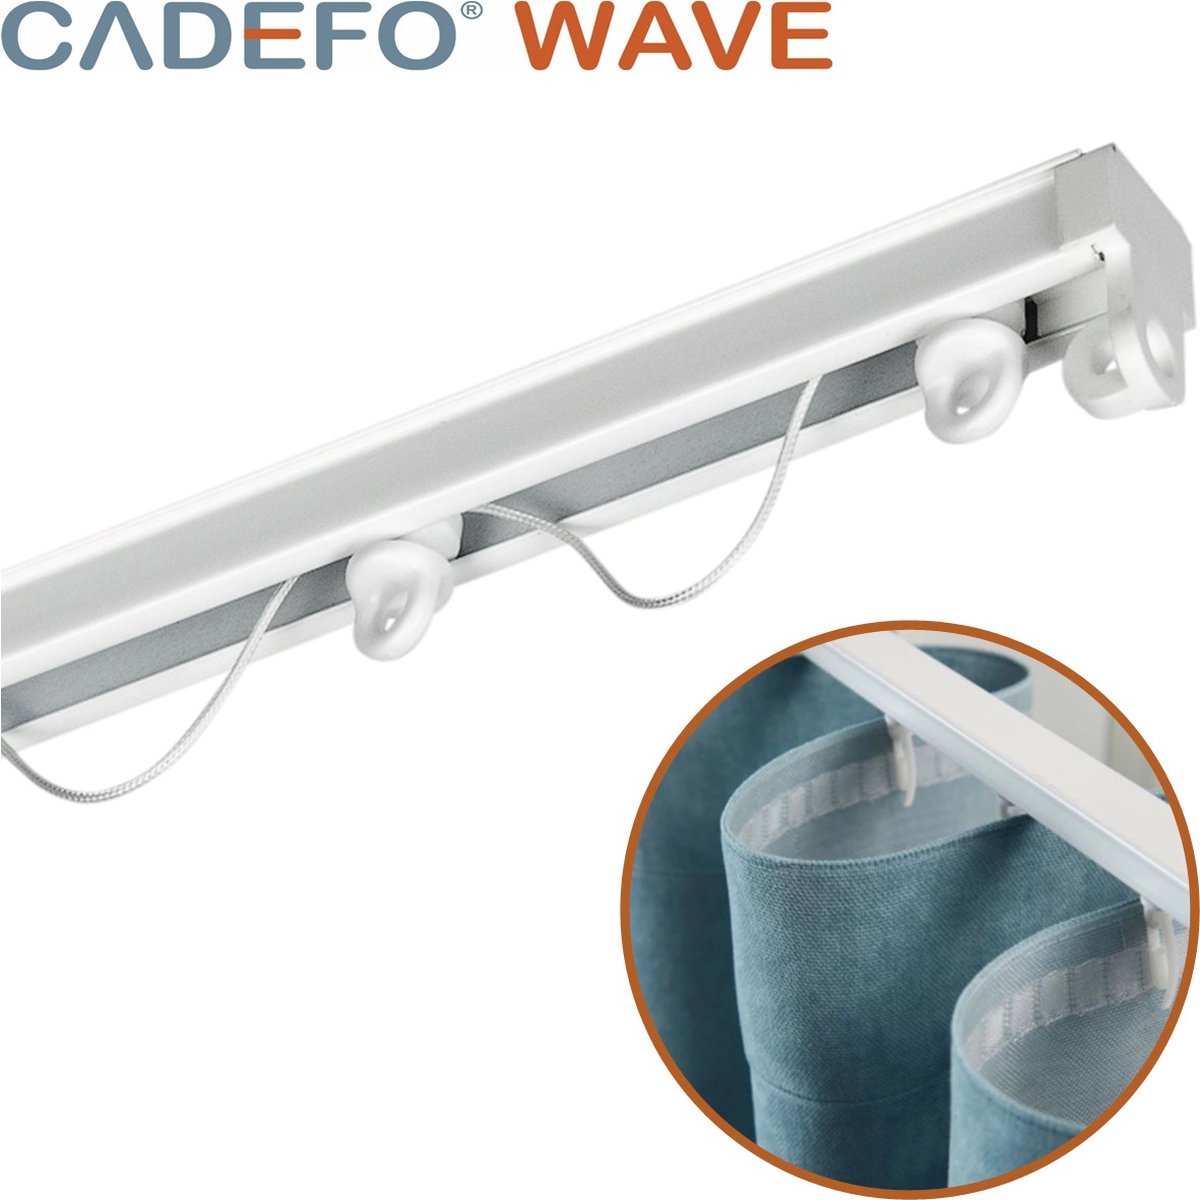 CADEFO WAVE (301 - 350 cm) Gordijnrails - Compleet op maat! - UIT 1 STUK - Leverbaar tot 6 meter - Plafondbevestiging - Lengte 302 cm